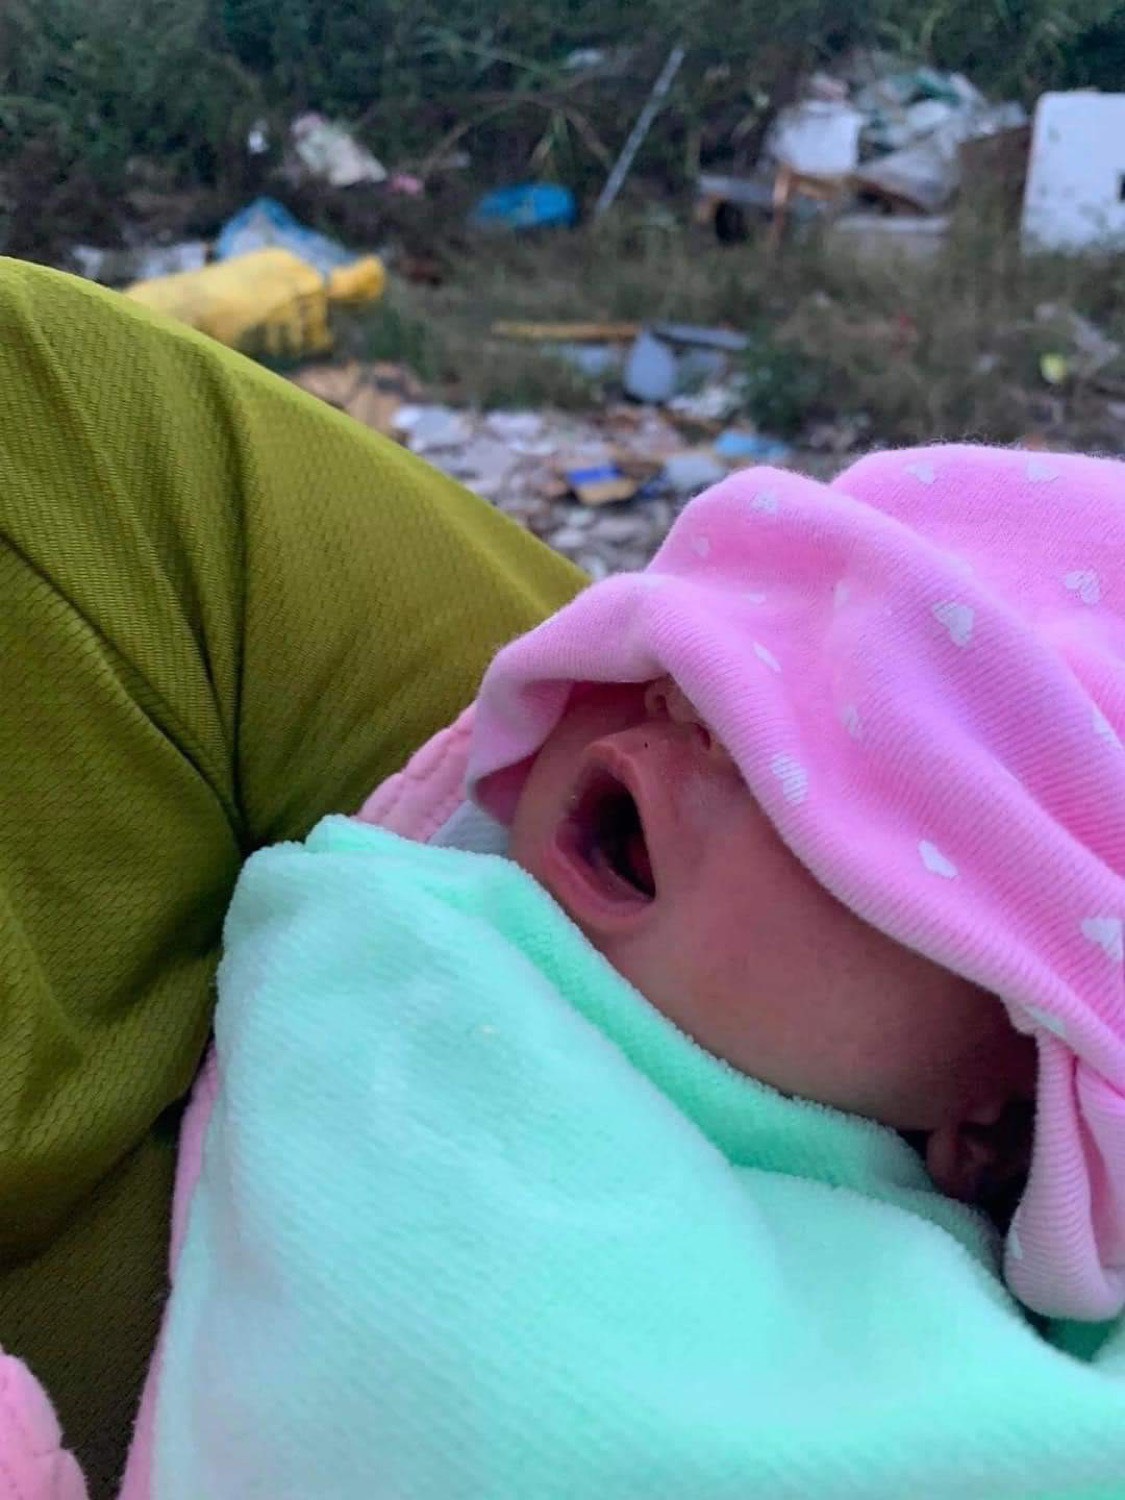 Bé trai sơ sinh khoảng 4 ngày tuổi bị bỏ rơi ở nhà rác xã Bình Trung, Thăng Bình, Quảng Nam. Ảnh Anh My